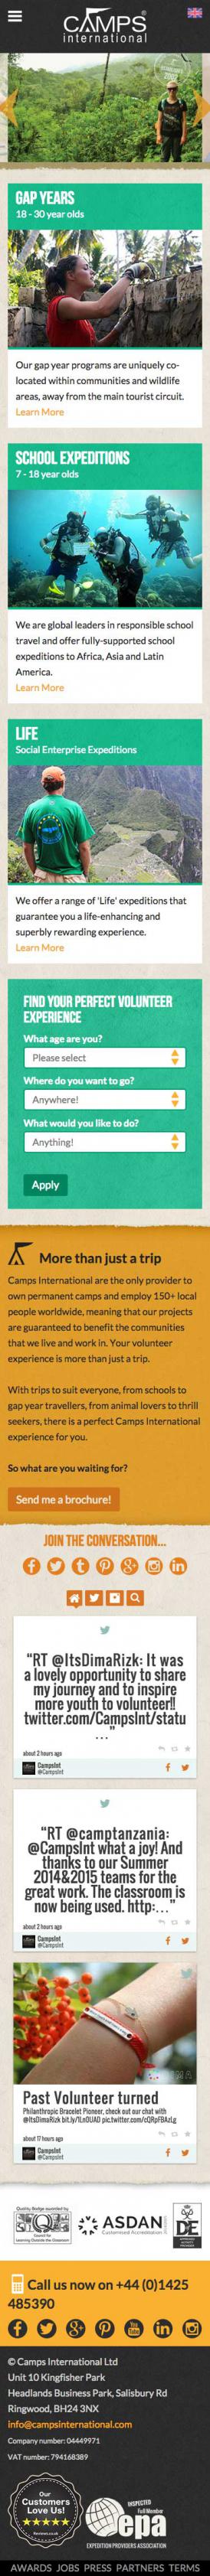 Camps International Website Mobile Design